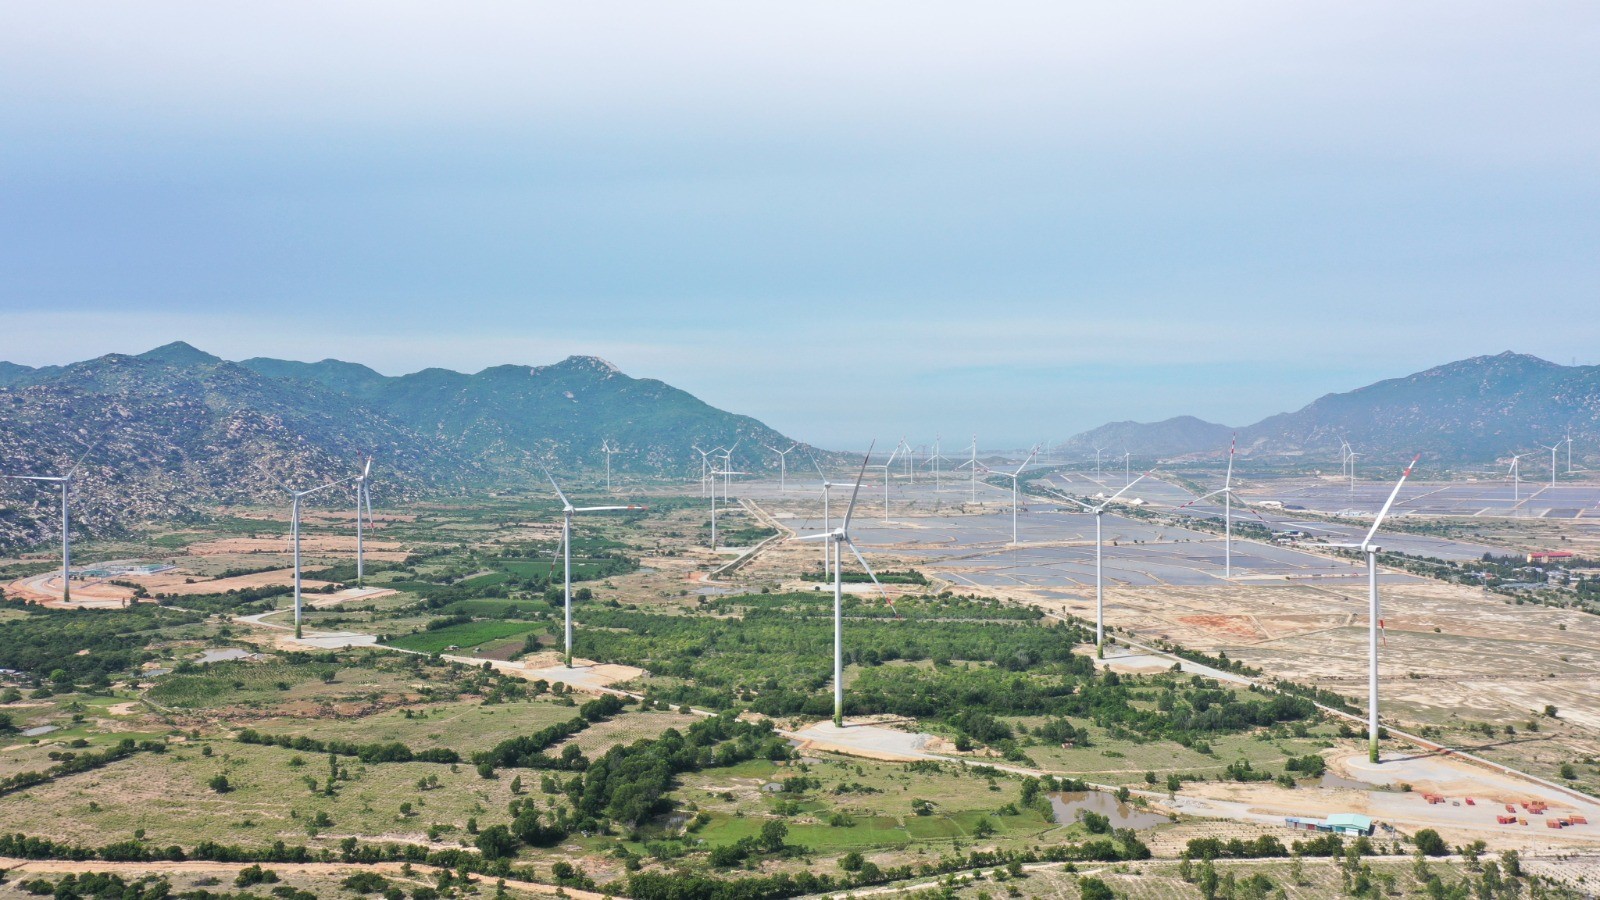 Bild: Windpark in Vietnam